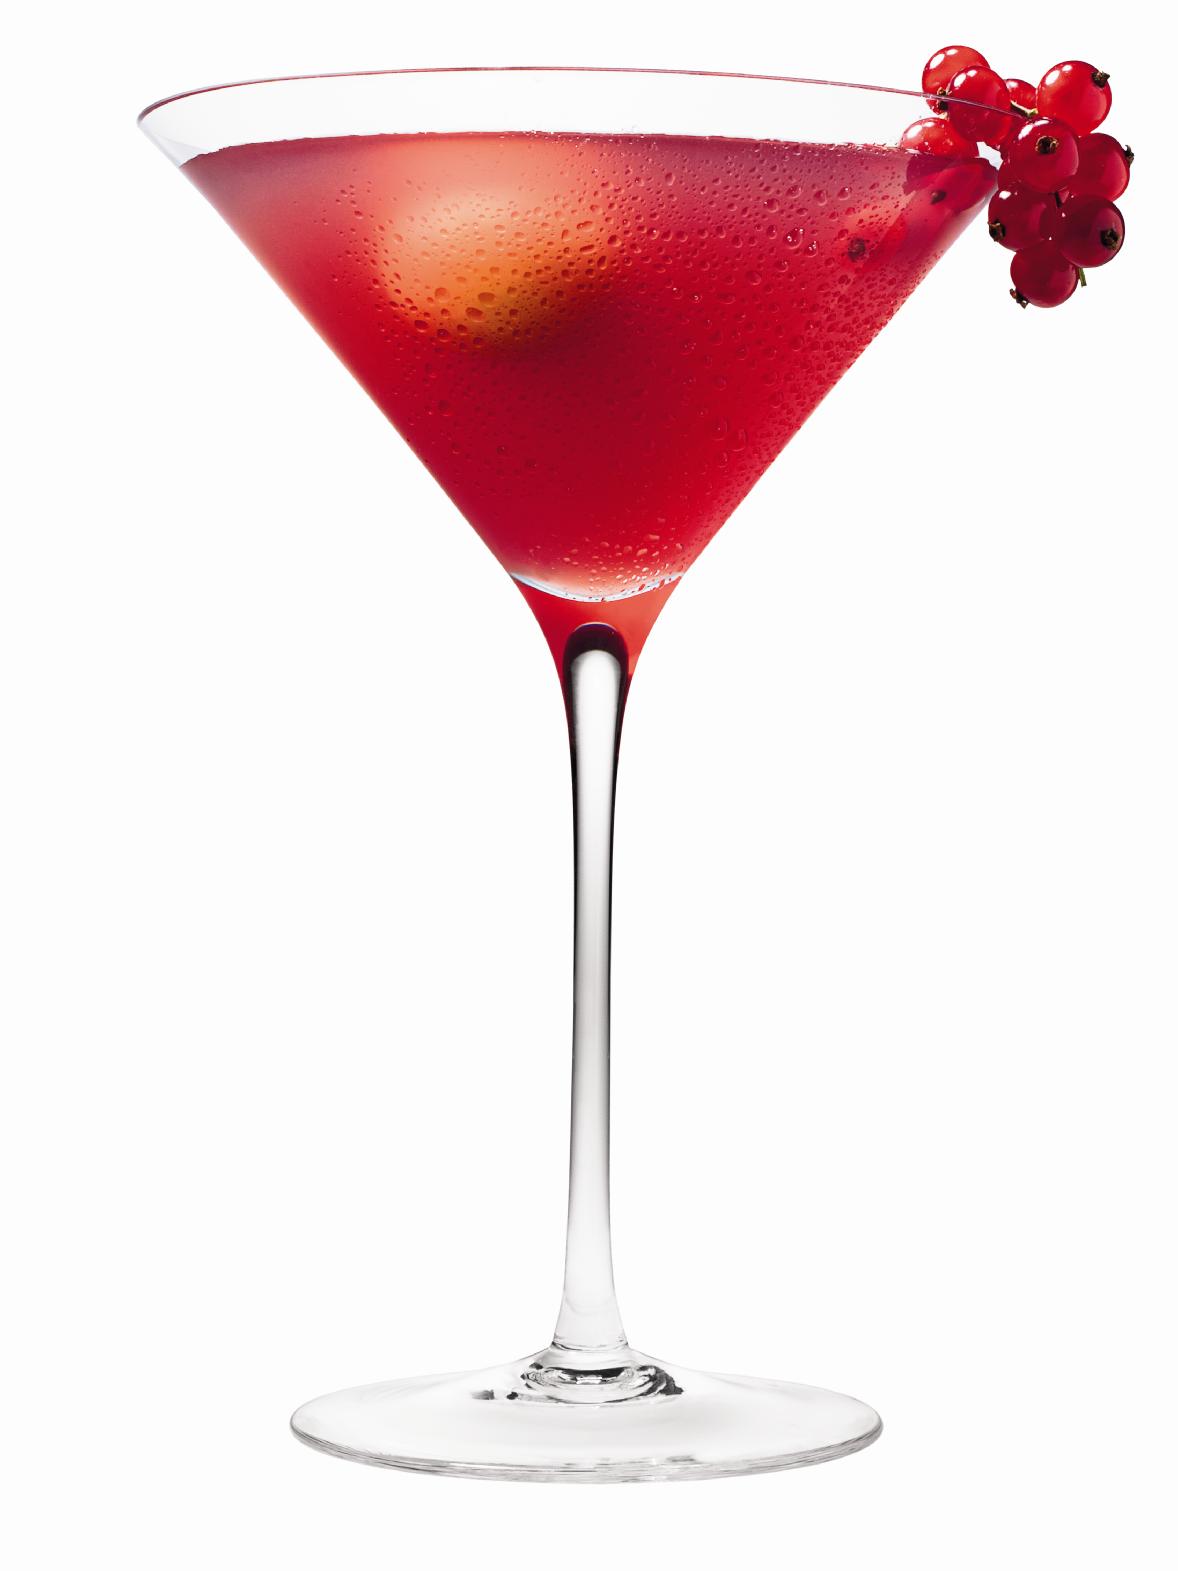 How do you make pomegranate martinis?